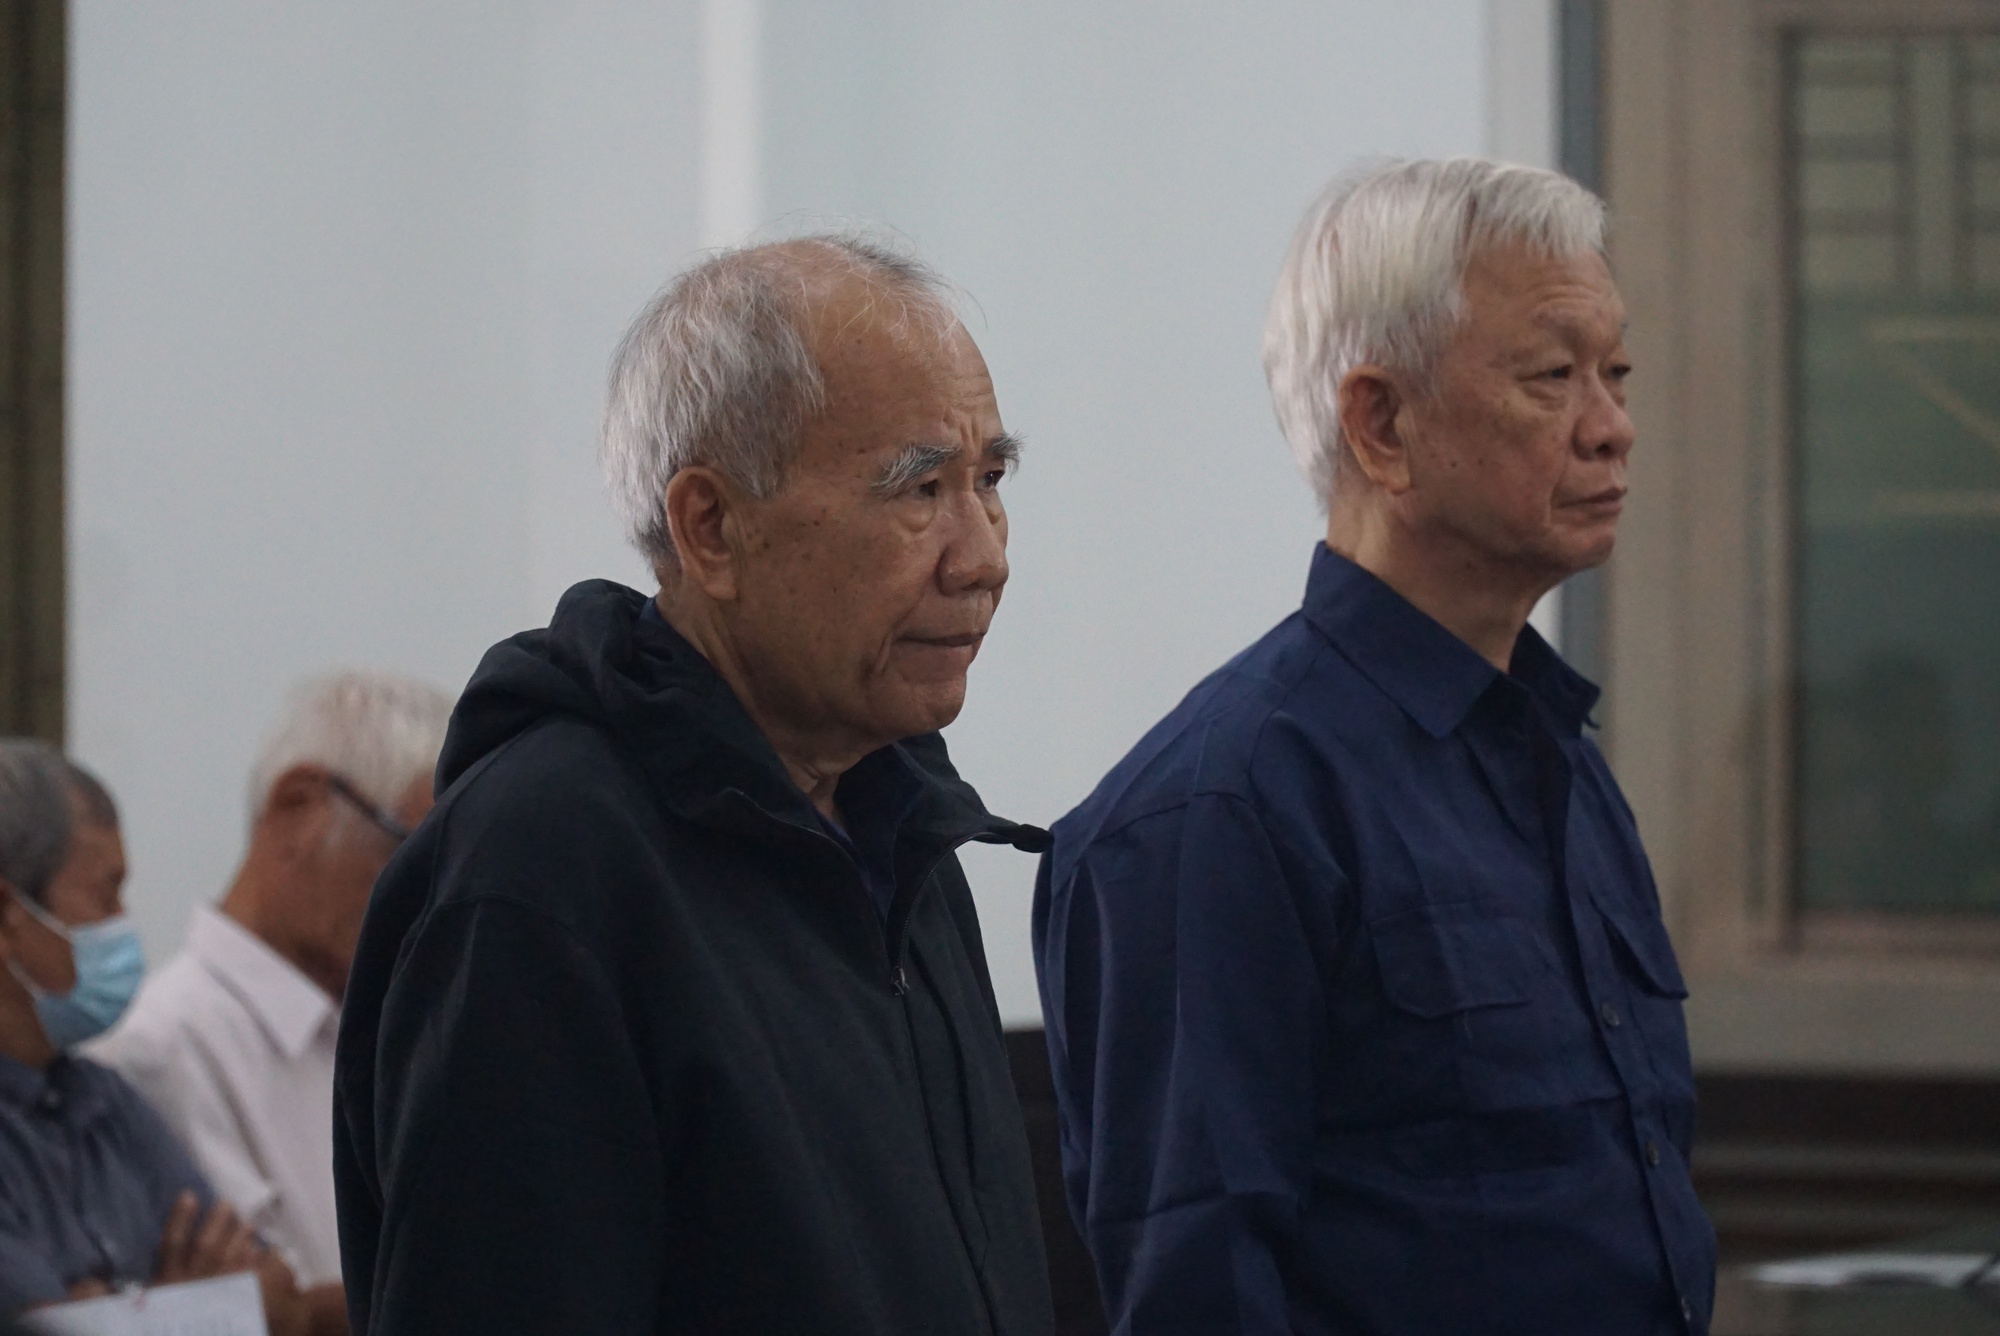 Ông Nguyễn Chiến Thắng (phải), cựu Chủ tịch UBND tỉnh Khánh Hòa và ông Đào Công Thiên, cựu Phó Chủ tịch UBND tỉnh Khánh Hòa tại phiên tòa.jpg